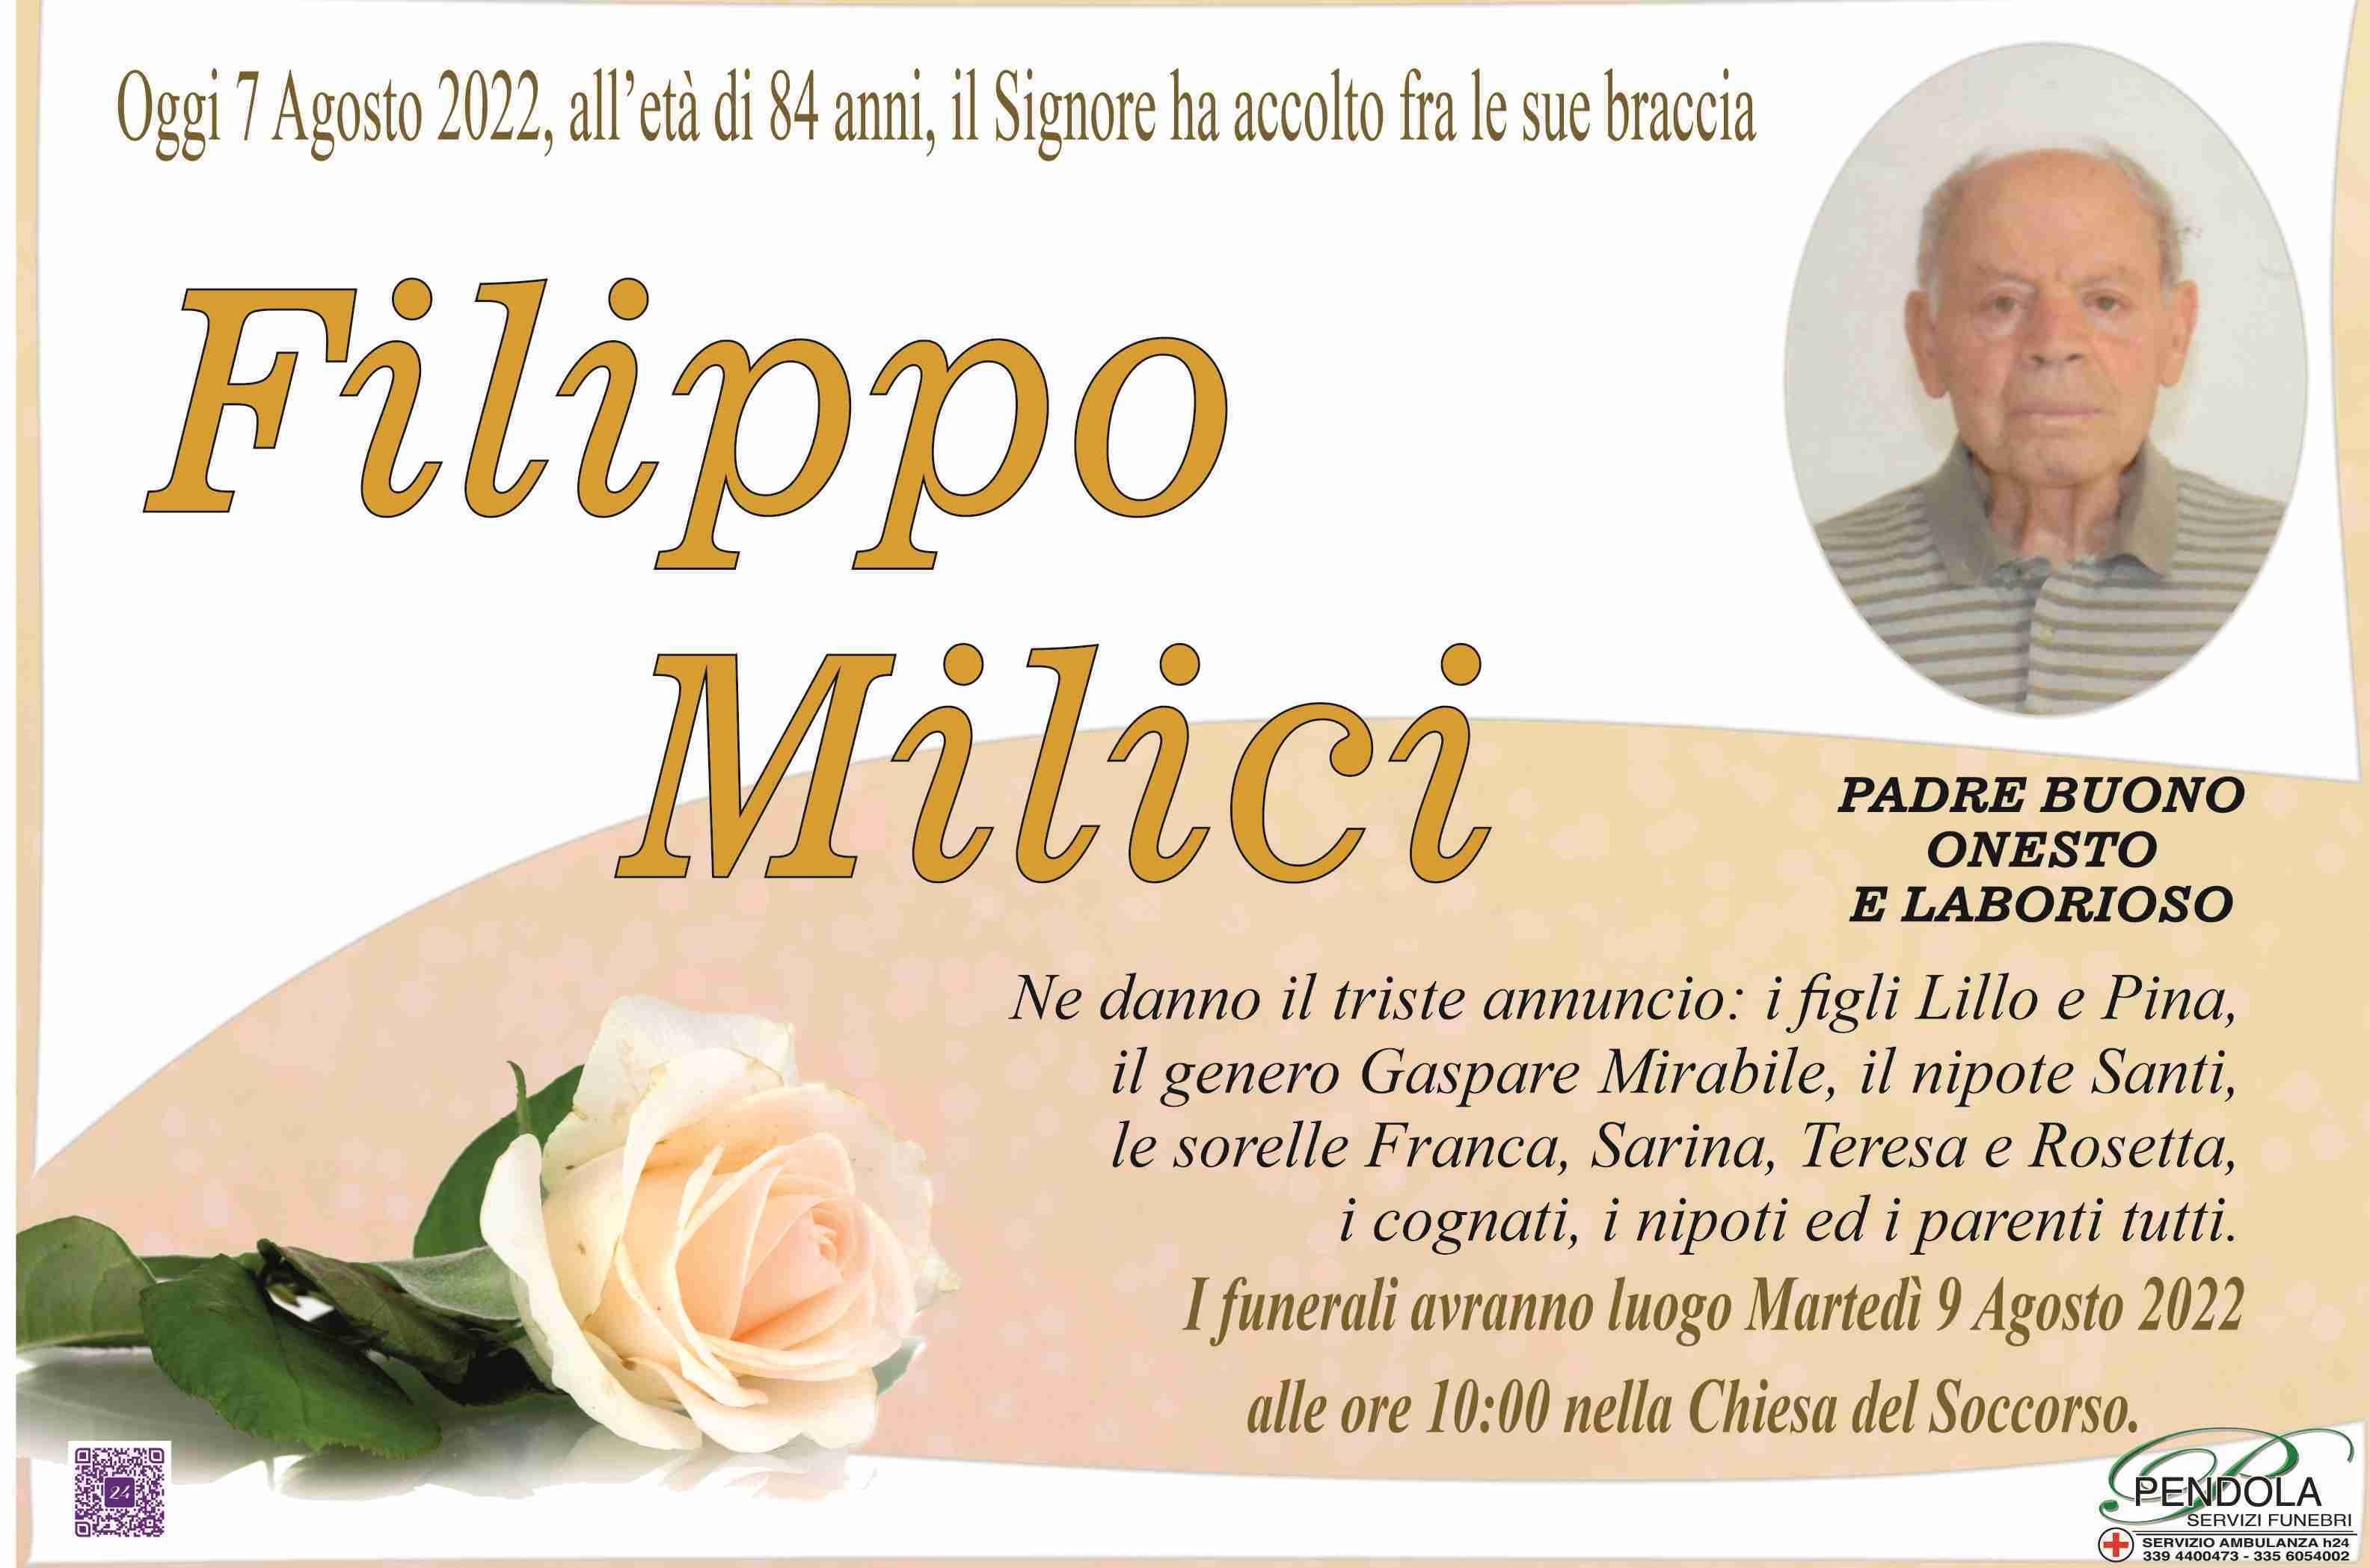 Filippo Milici